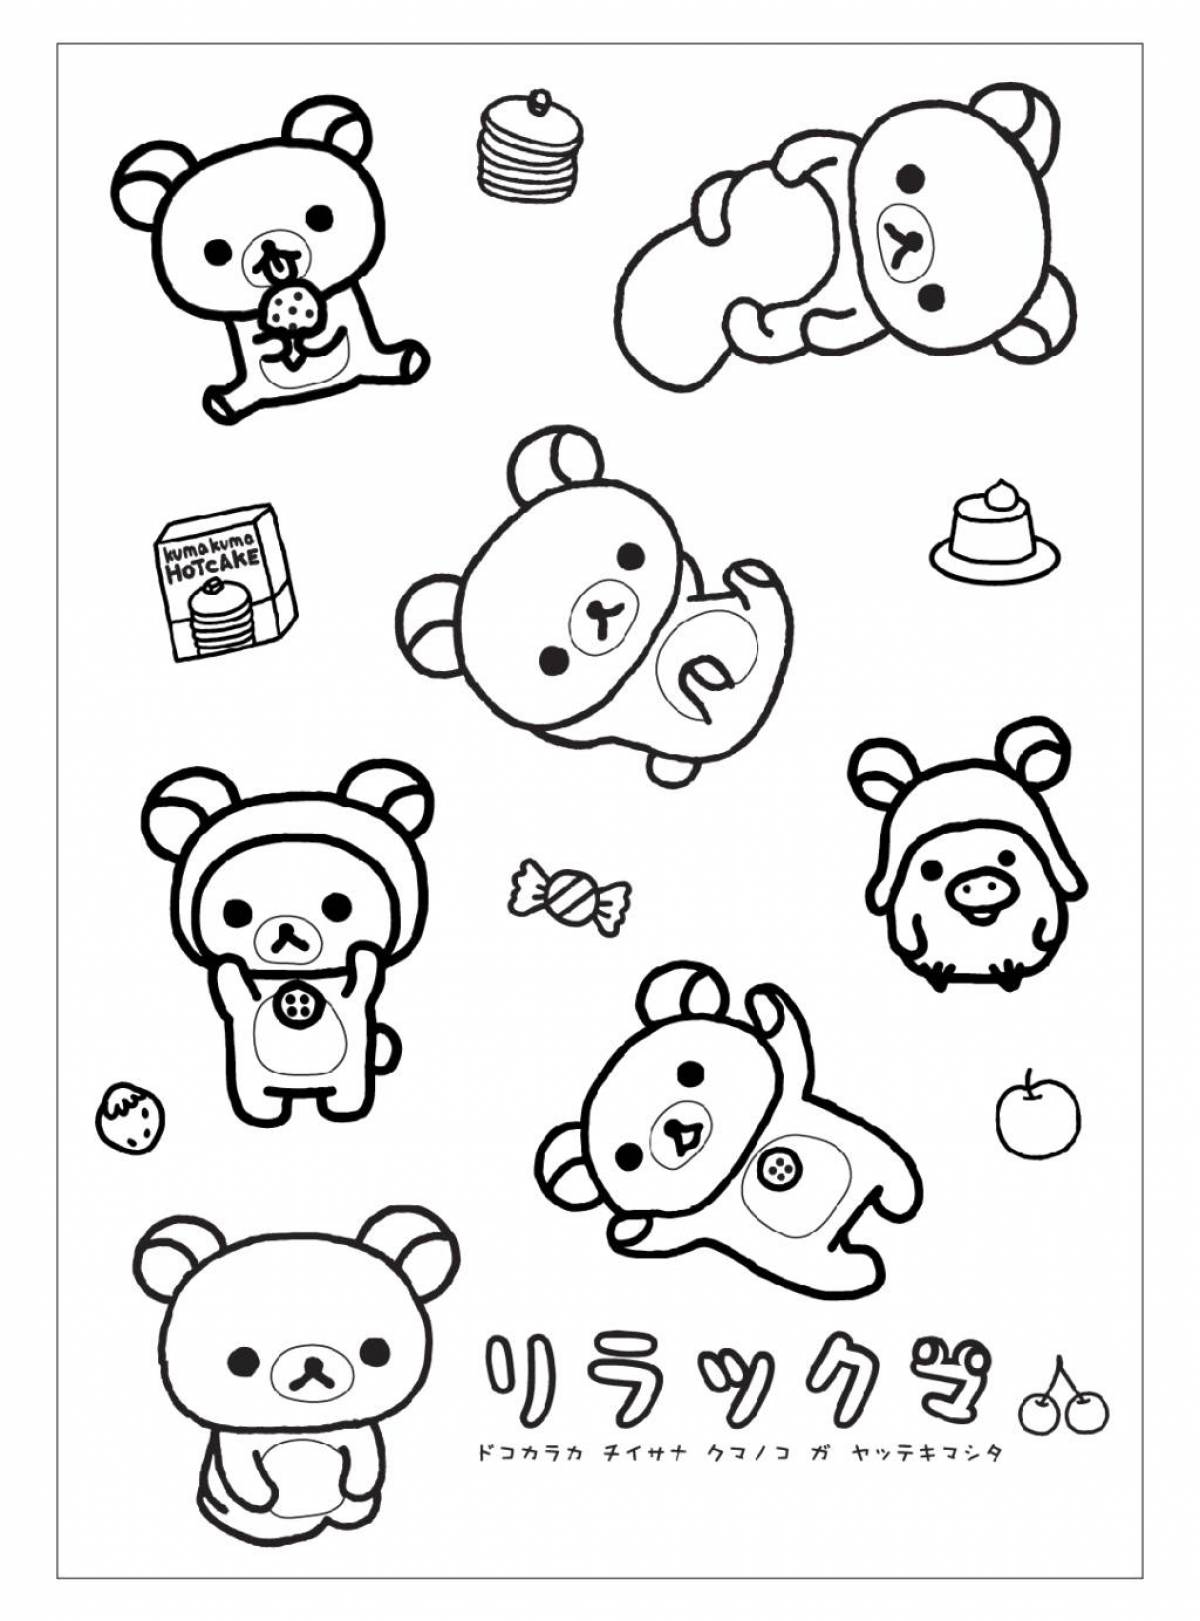 Trendy mini sticker coloring page